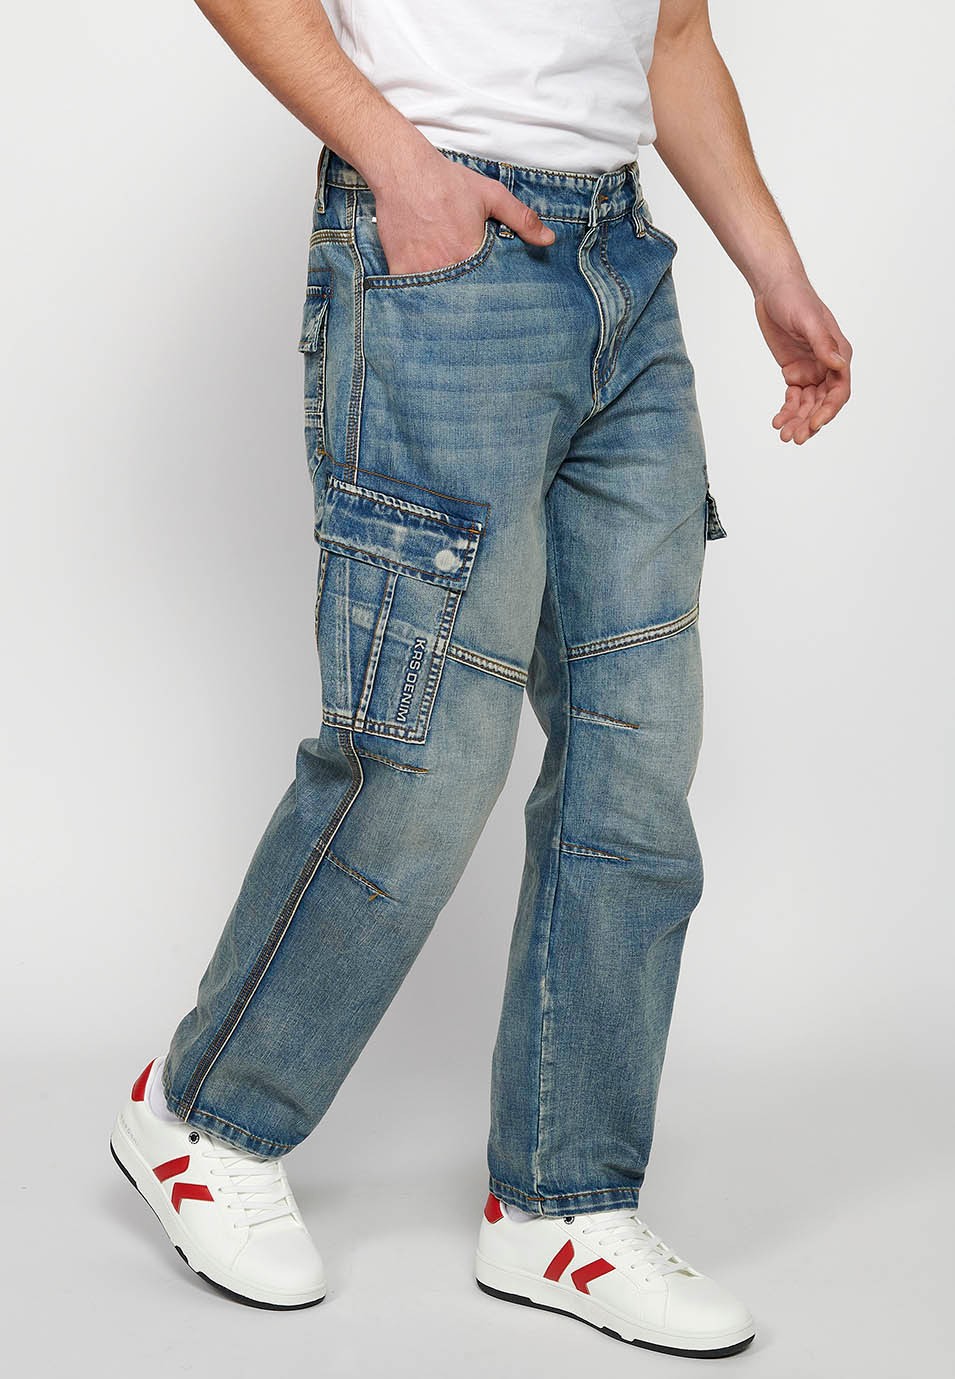 Pantalons càrrec llarg amb Tancament davanter amb cremallera i botó amb Butxaques laterals amb solapa de Color Blau per a Home 1